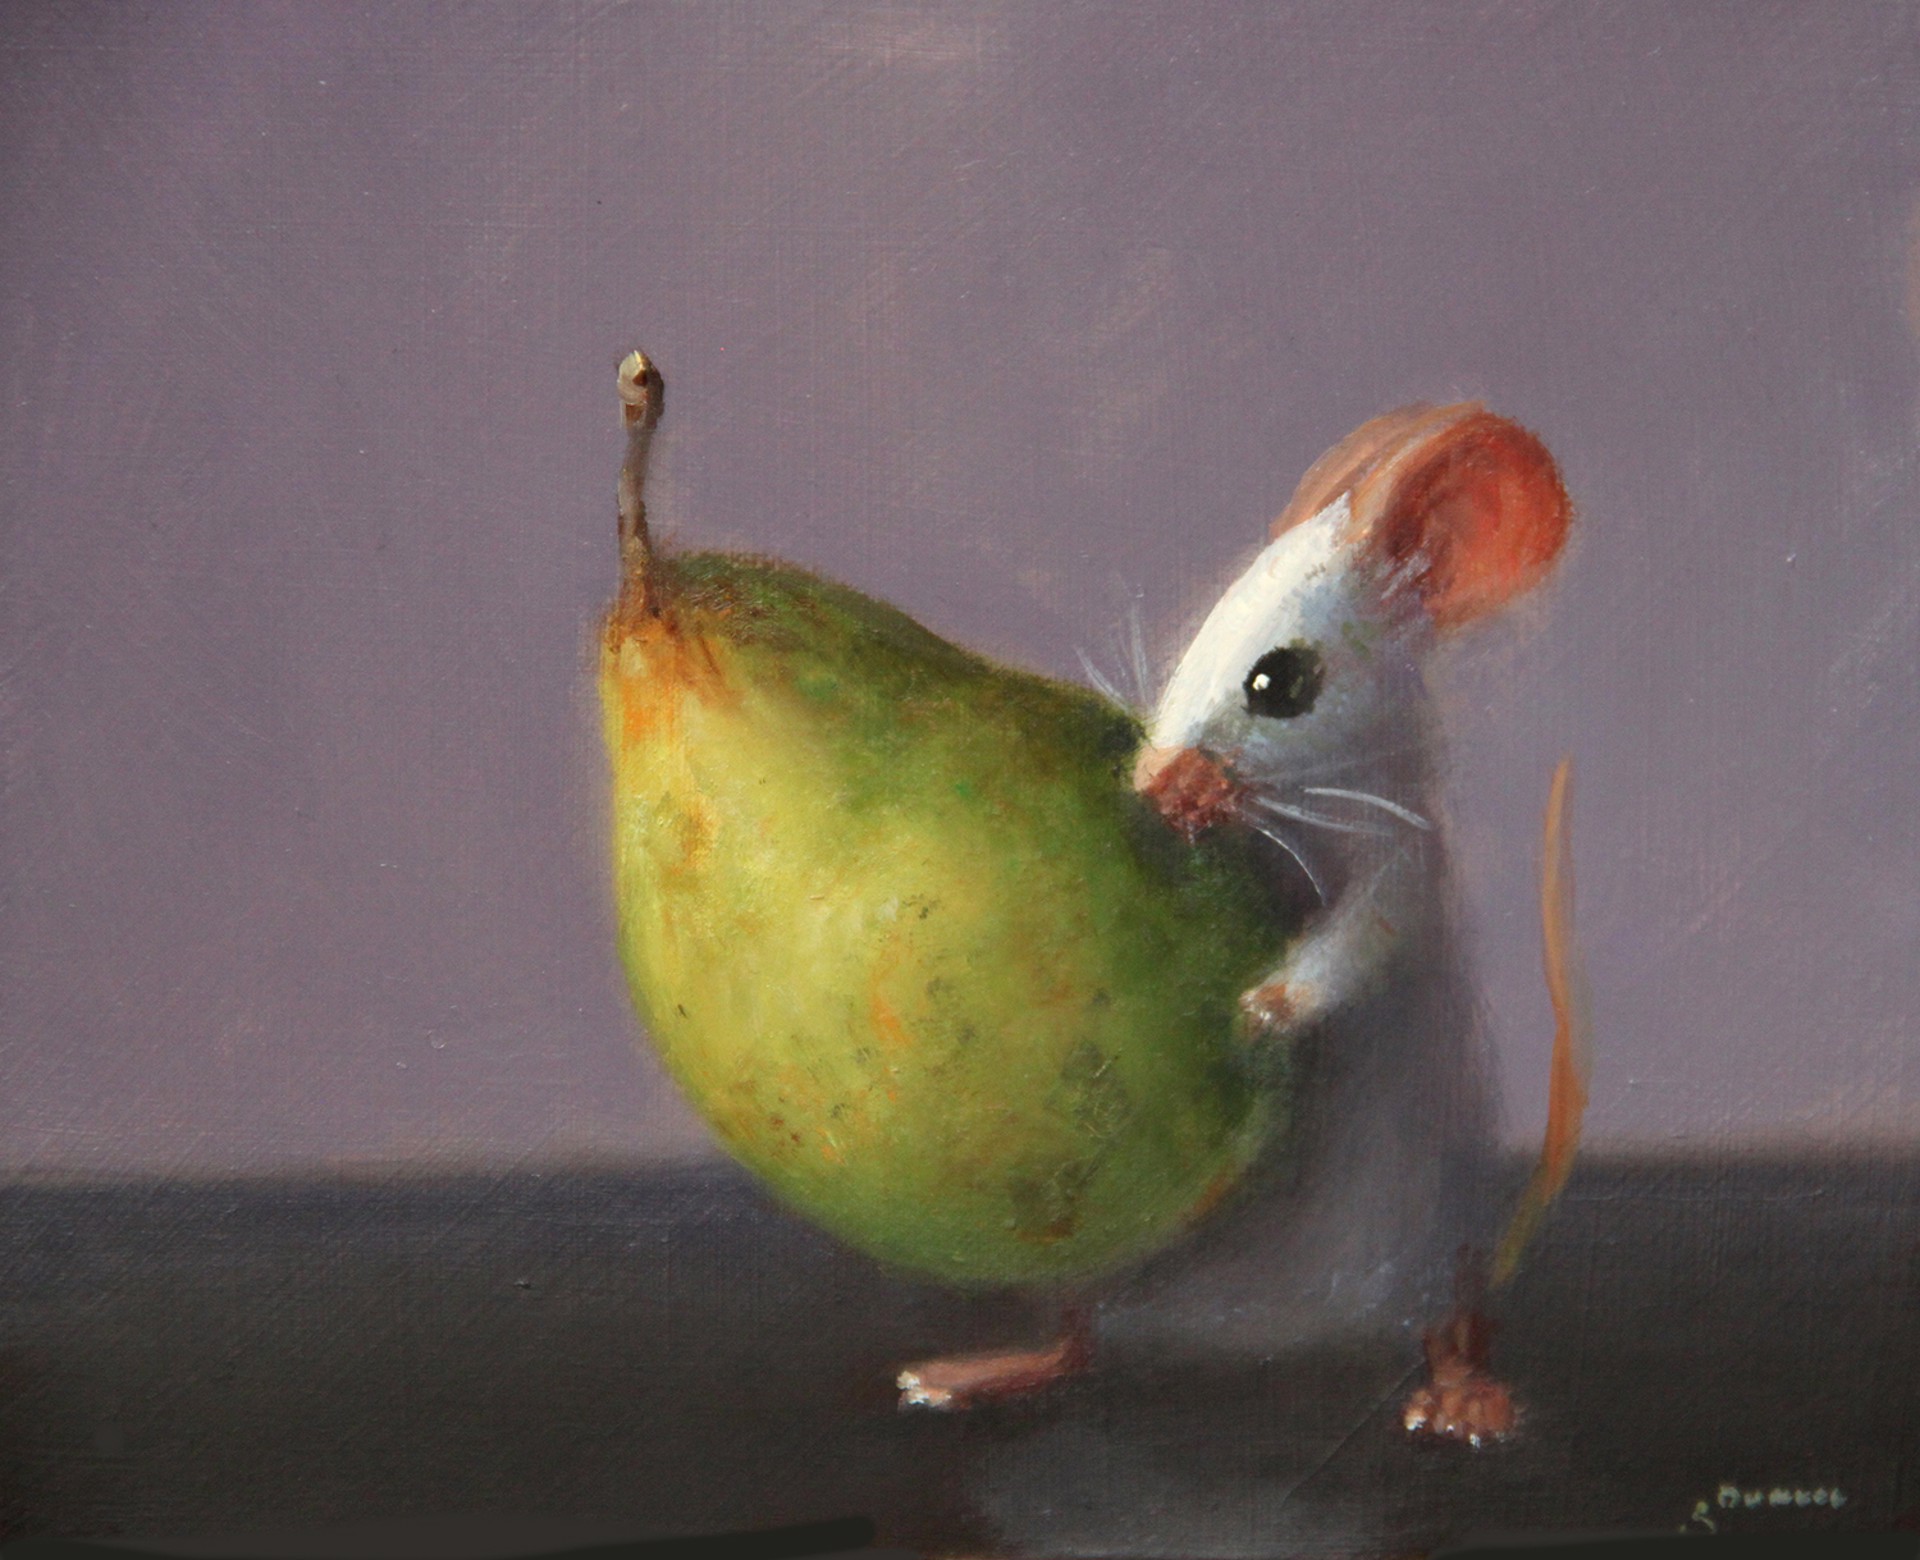 Pear Lunch by Stuart Dunkel